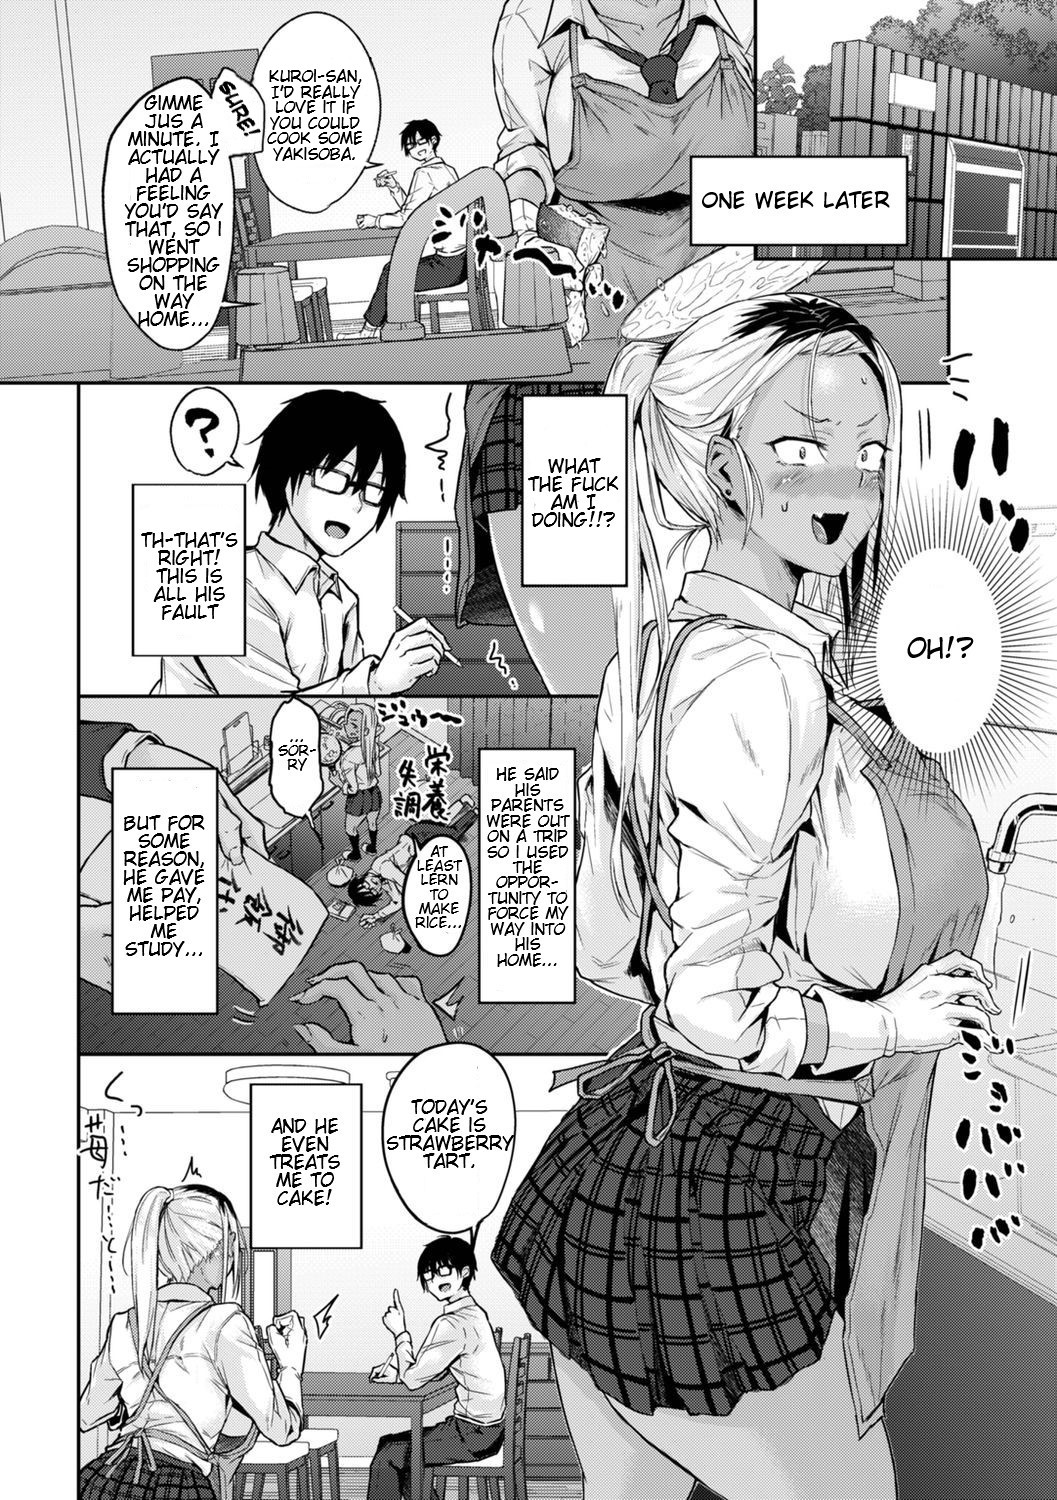 Hentai Manga Comic-Kuroi-san's Clever-Read-2